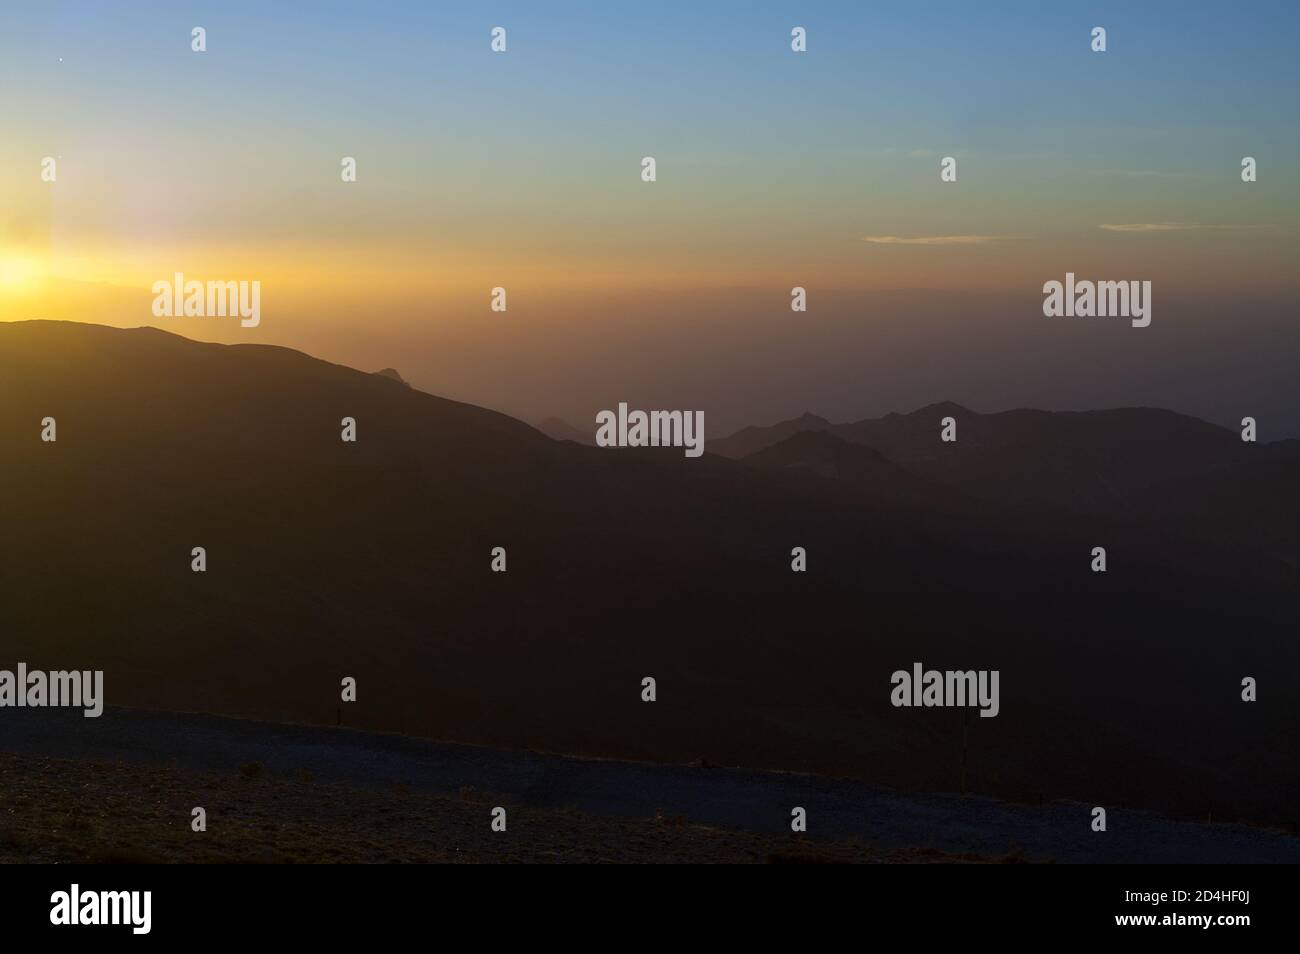 Sierra Nevada, España, Hiszpania, Spain, Spanien; Colorful sunset over the mountain tops. Bunter Sonnenuntergang über den Berggipfeln. 在山頂上的日落。 Stock Photo